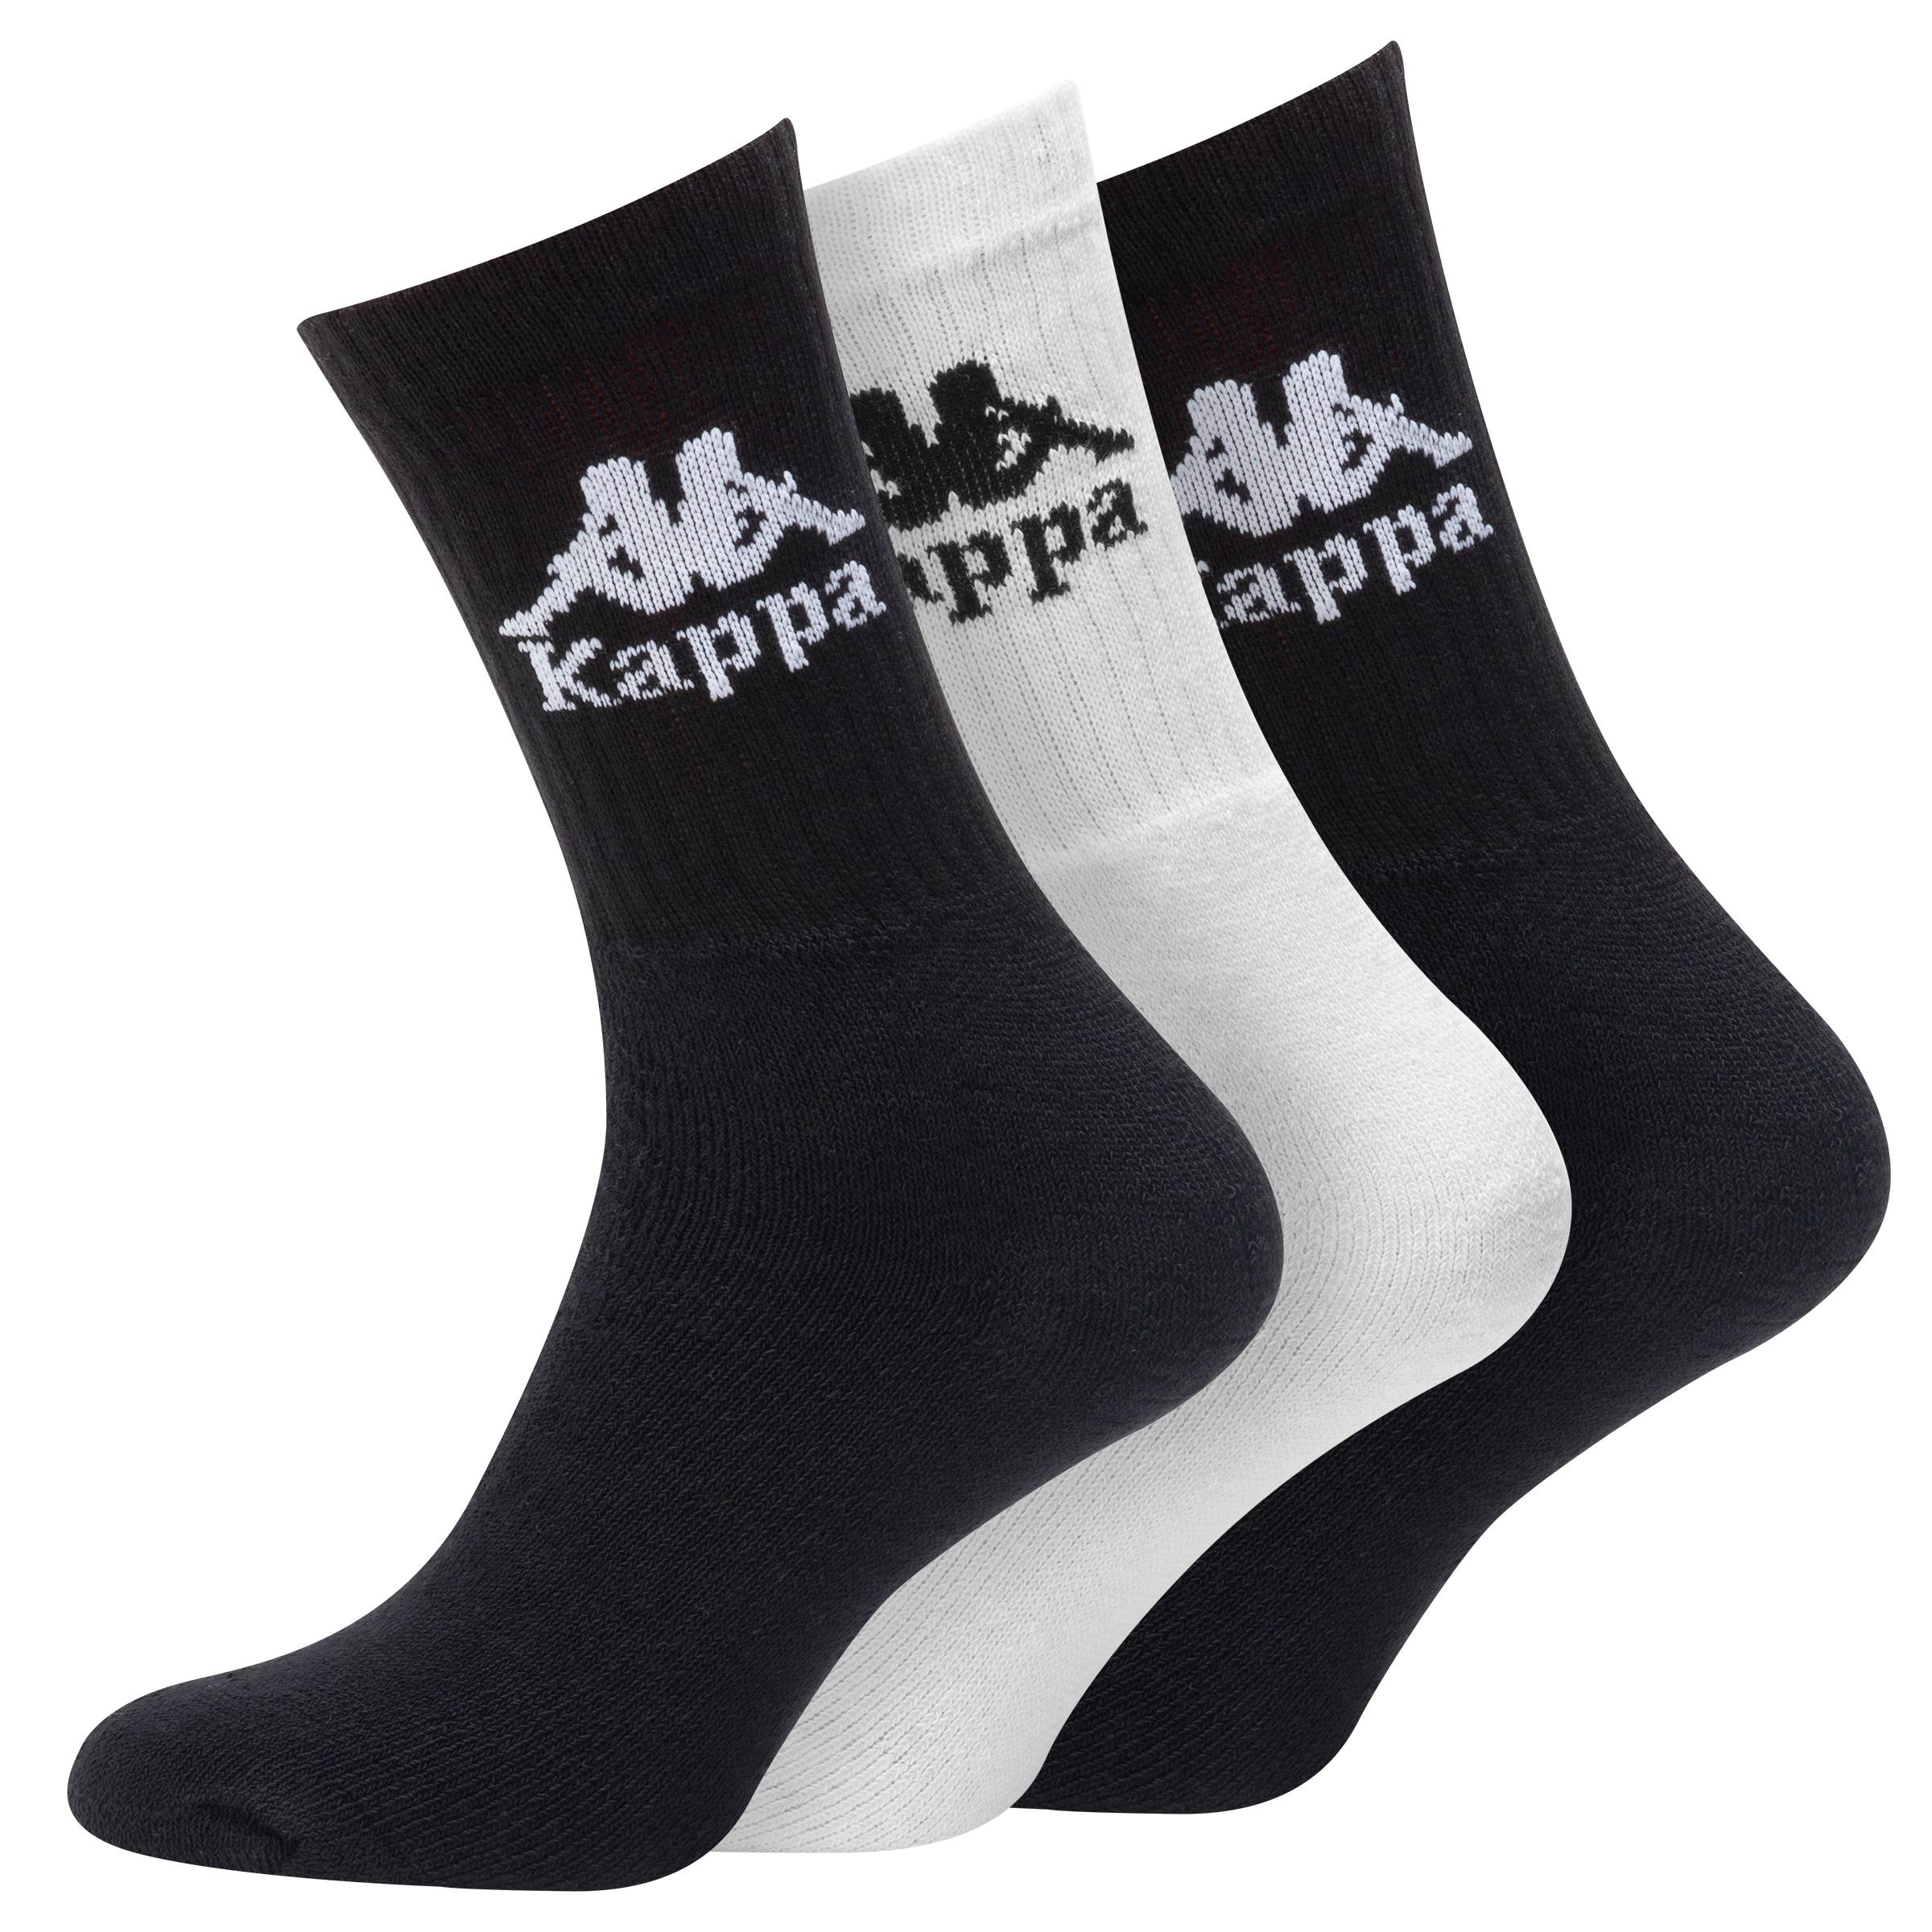 AUTHENTIC AILEL ponožky 3pack černá/bílá